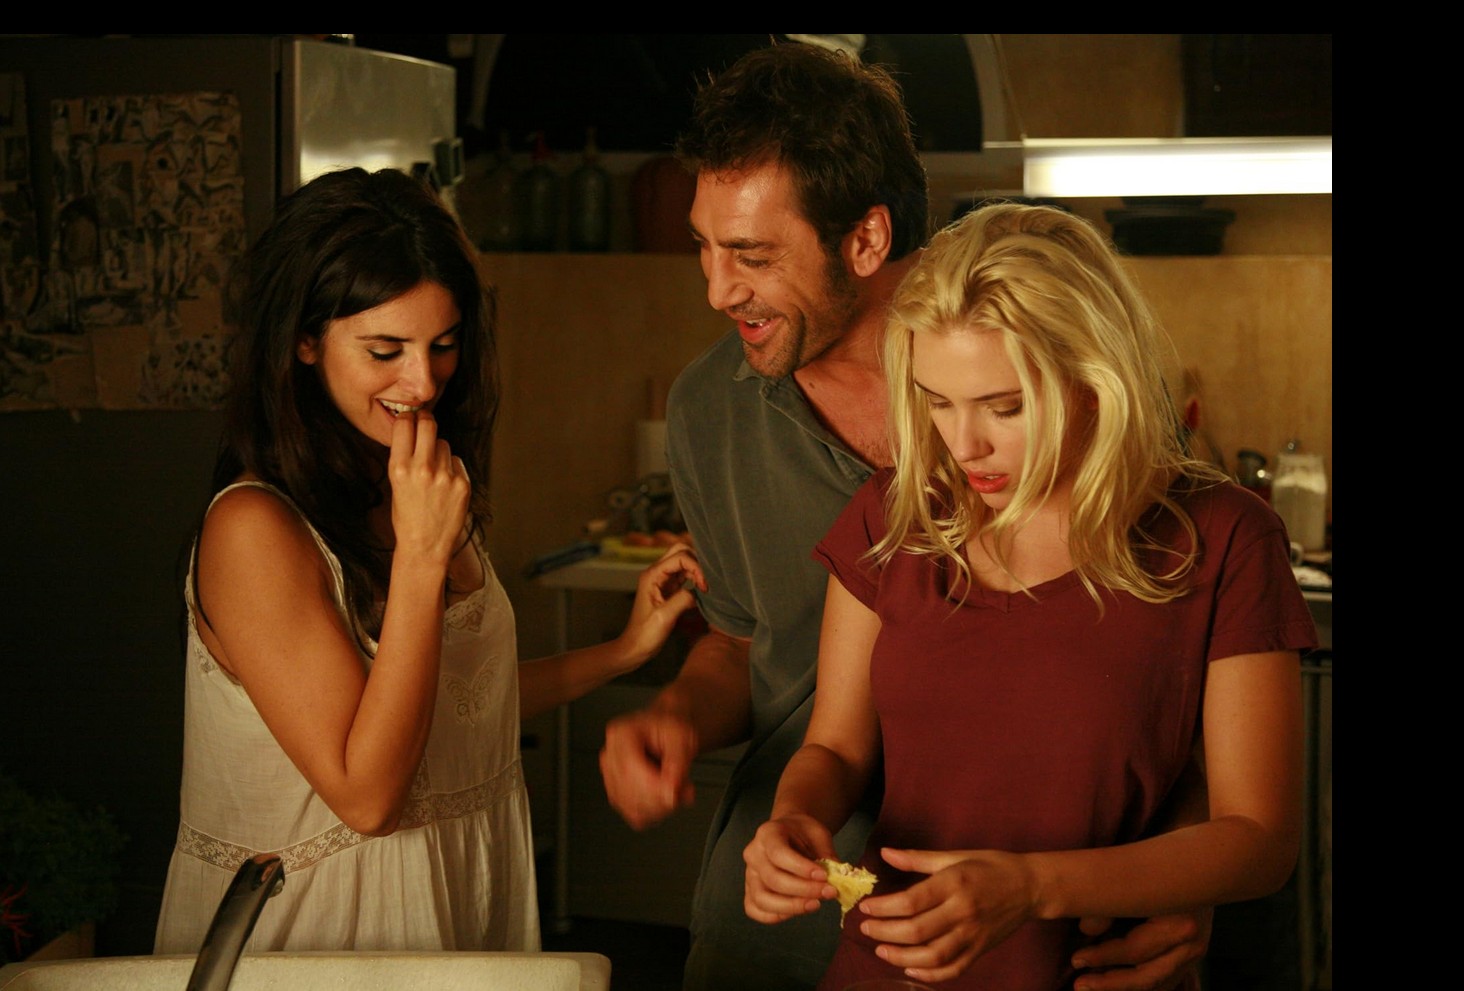 Във филма "Вики, Кристина, Барселона", заедно с Пенелопе и Скарлет Йохансон